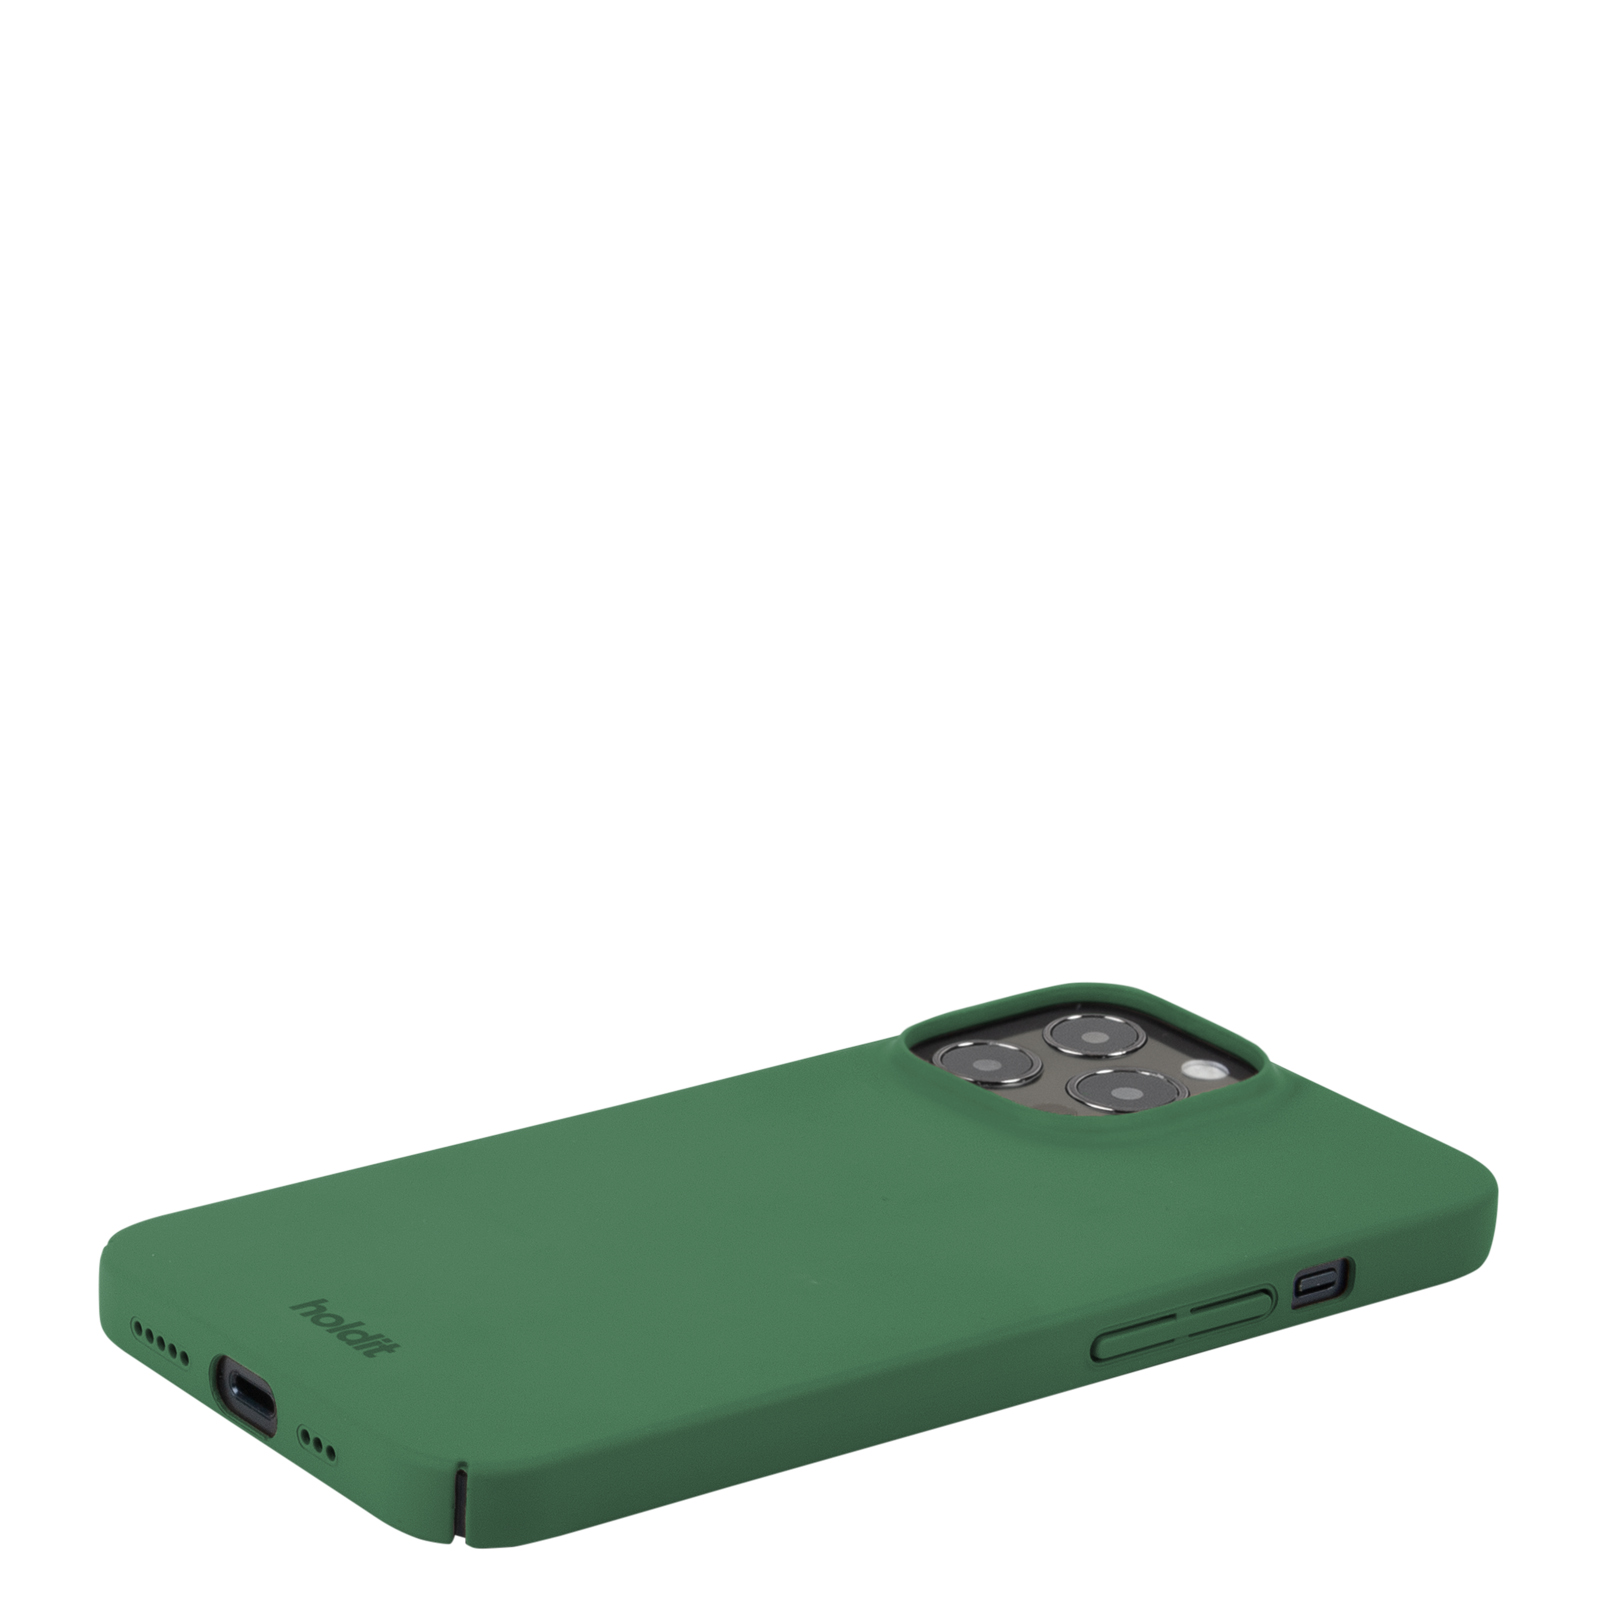 Гръб Holdit за  iPhone 13 Pro, Slim Case, Зелен